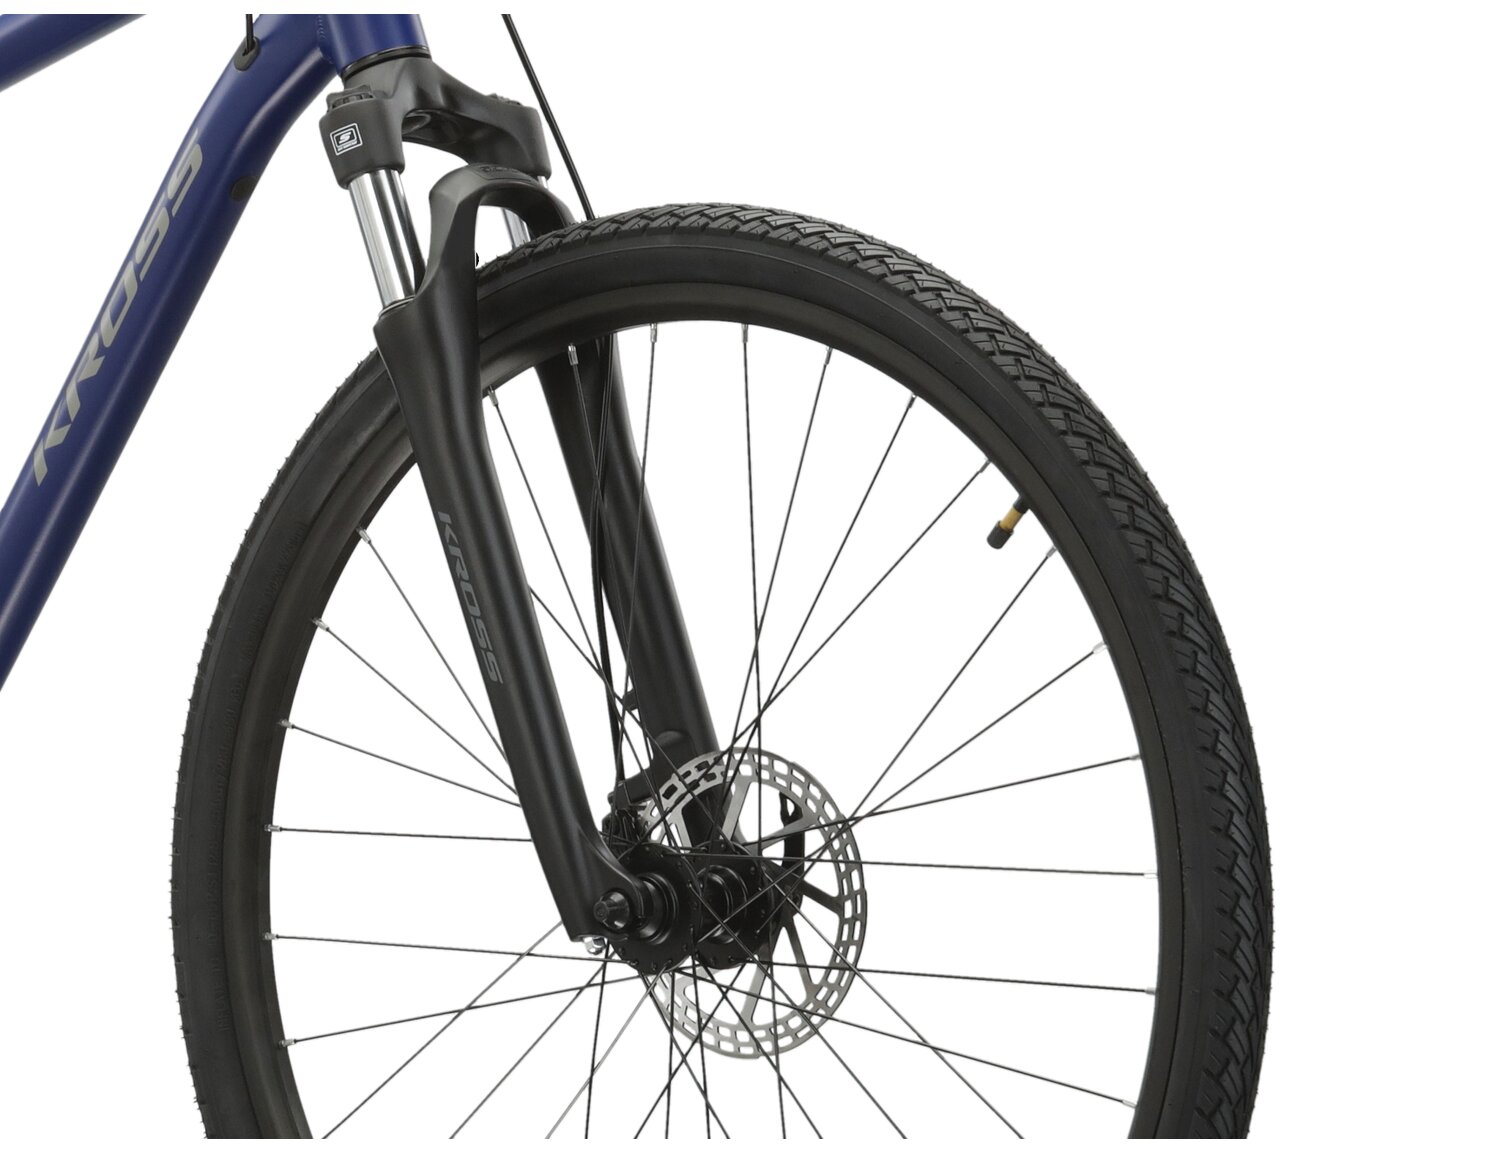  Amortyzowany widelec SR Suntour Nex, rama z alumium oraz opony WANDA G5001 28X1,75 w rowerze crossowym Kross Evado 3.0 